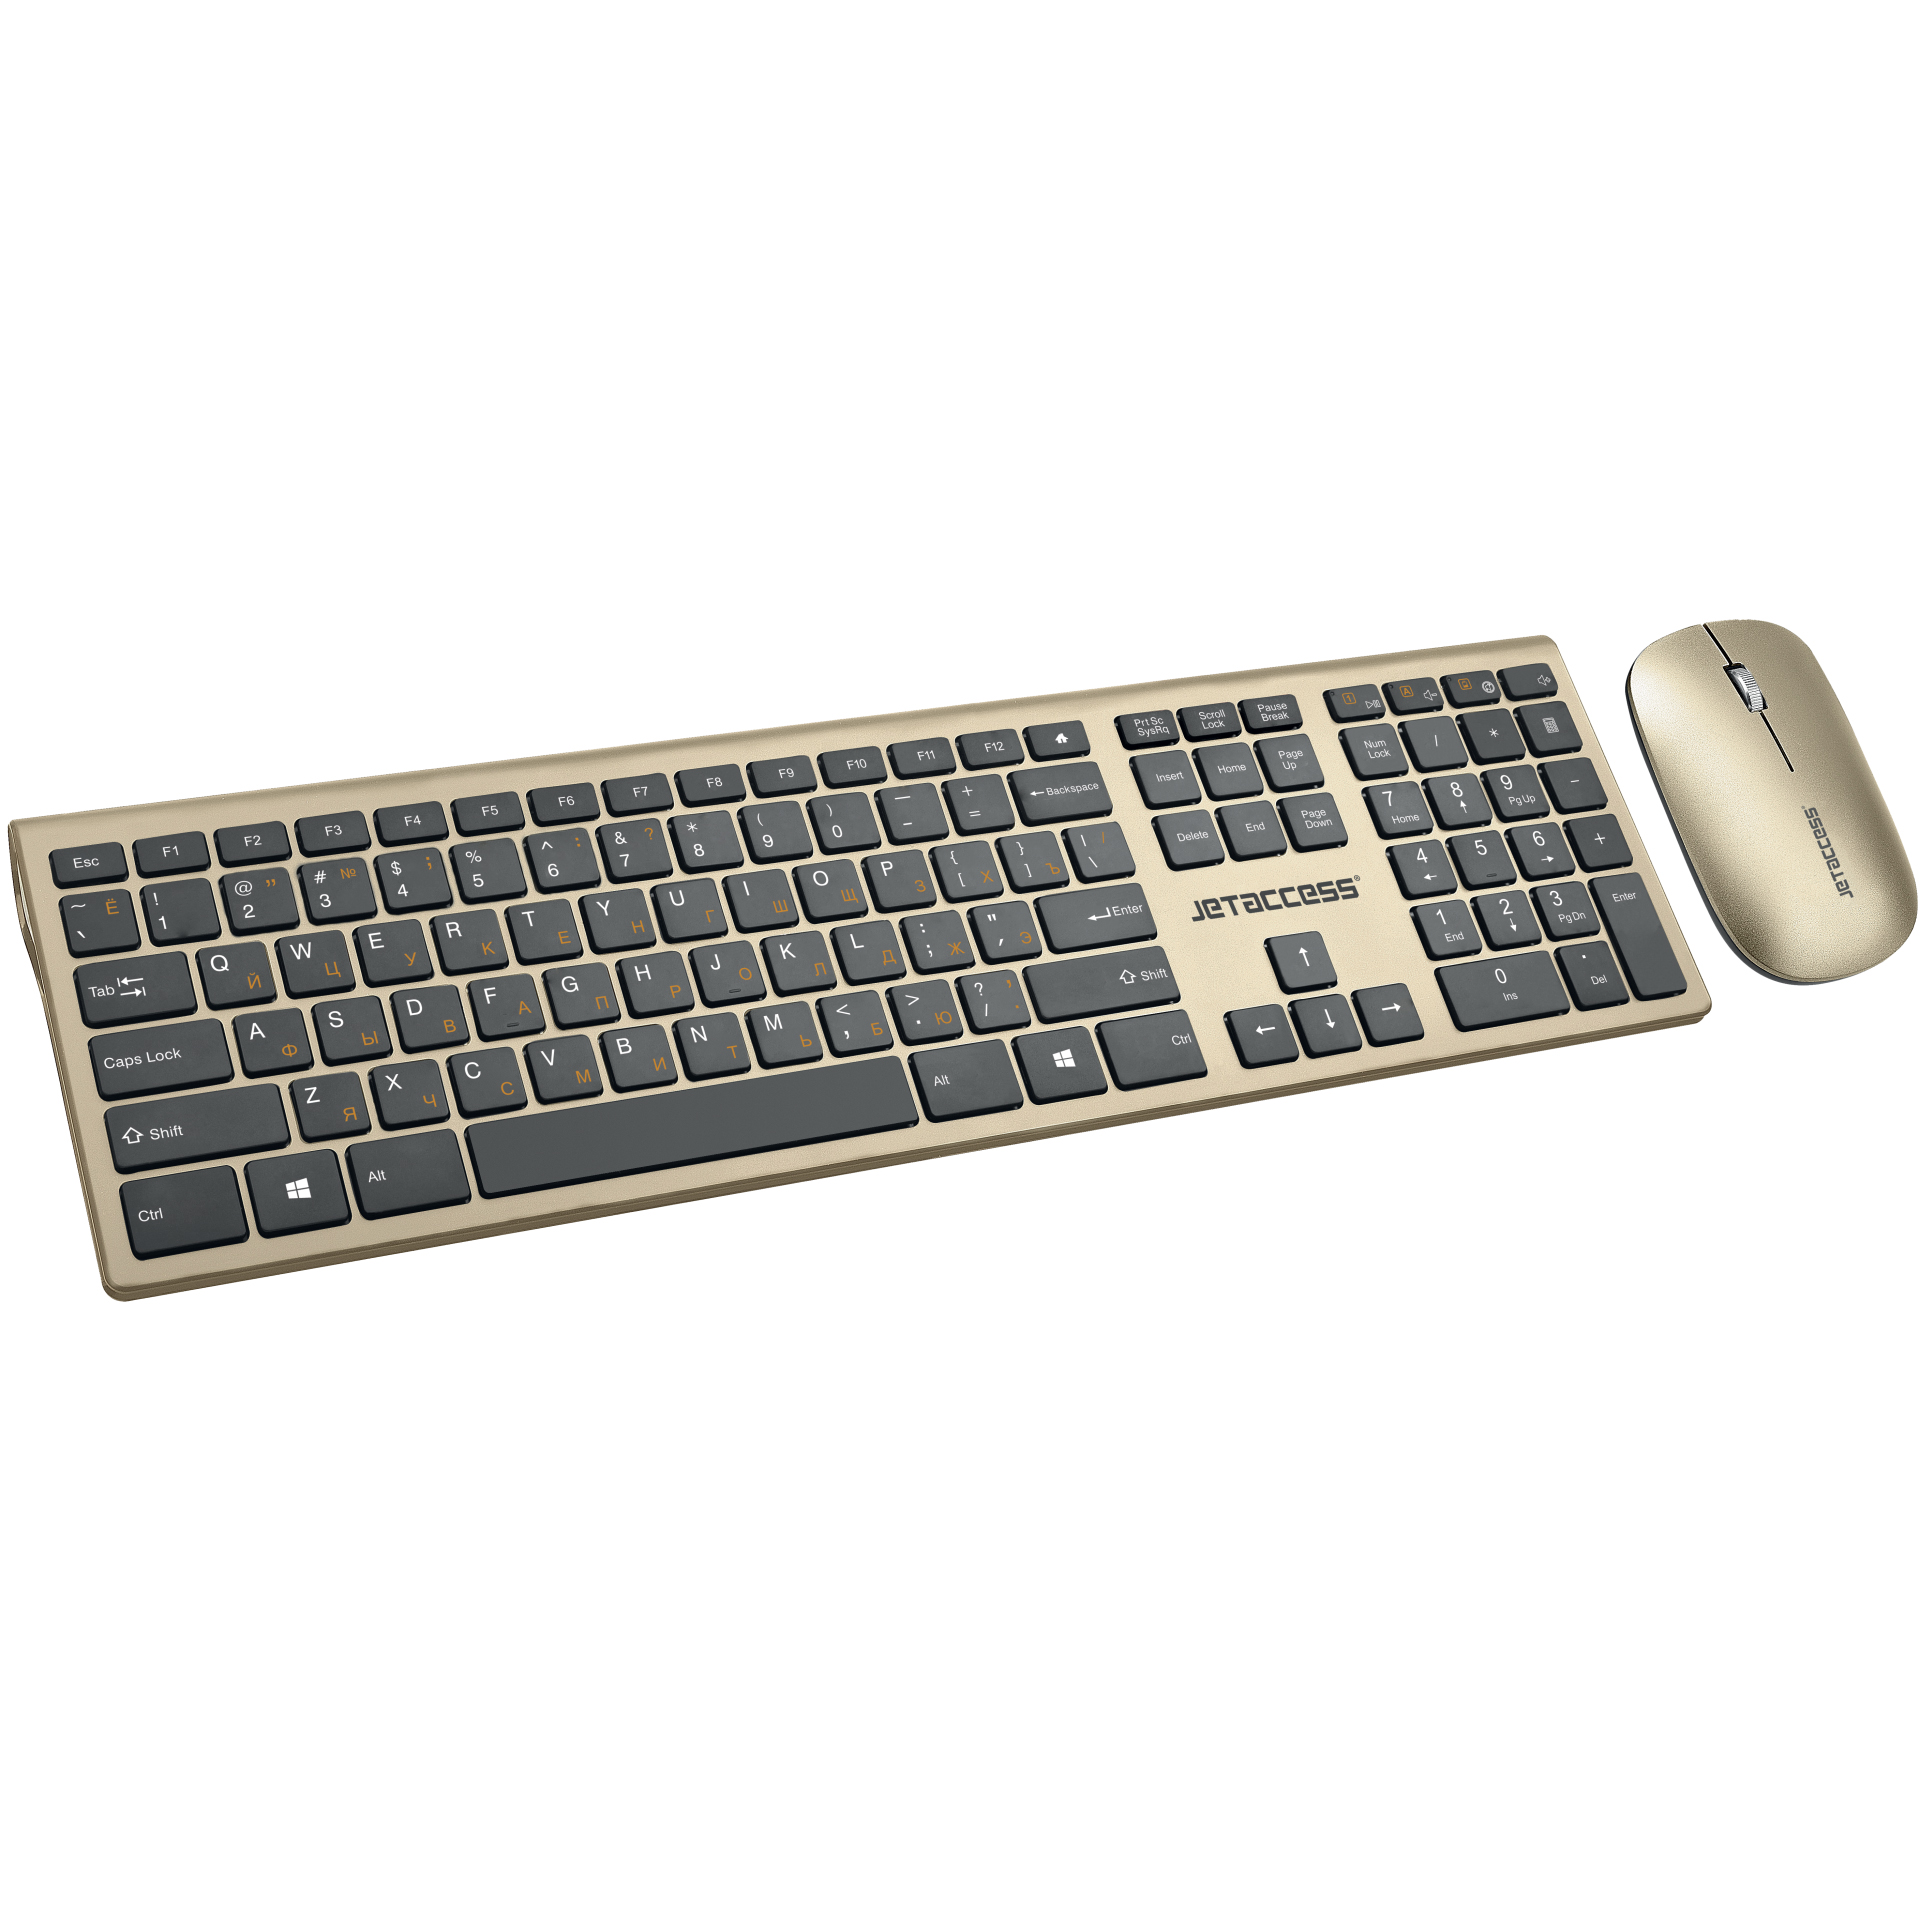 Комплект клавиатуры и мыши Jet.A Jetaccess Slim Line KM41 W золотой-черный